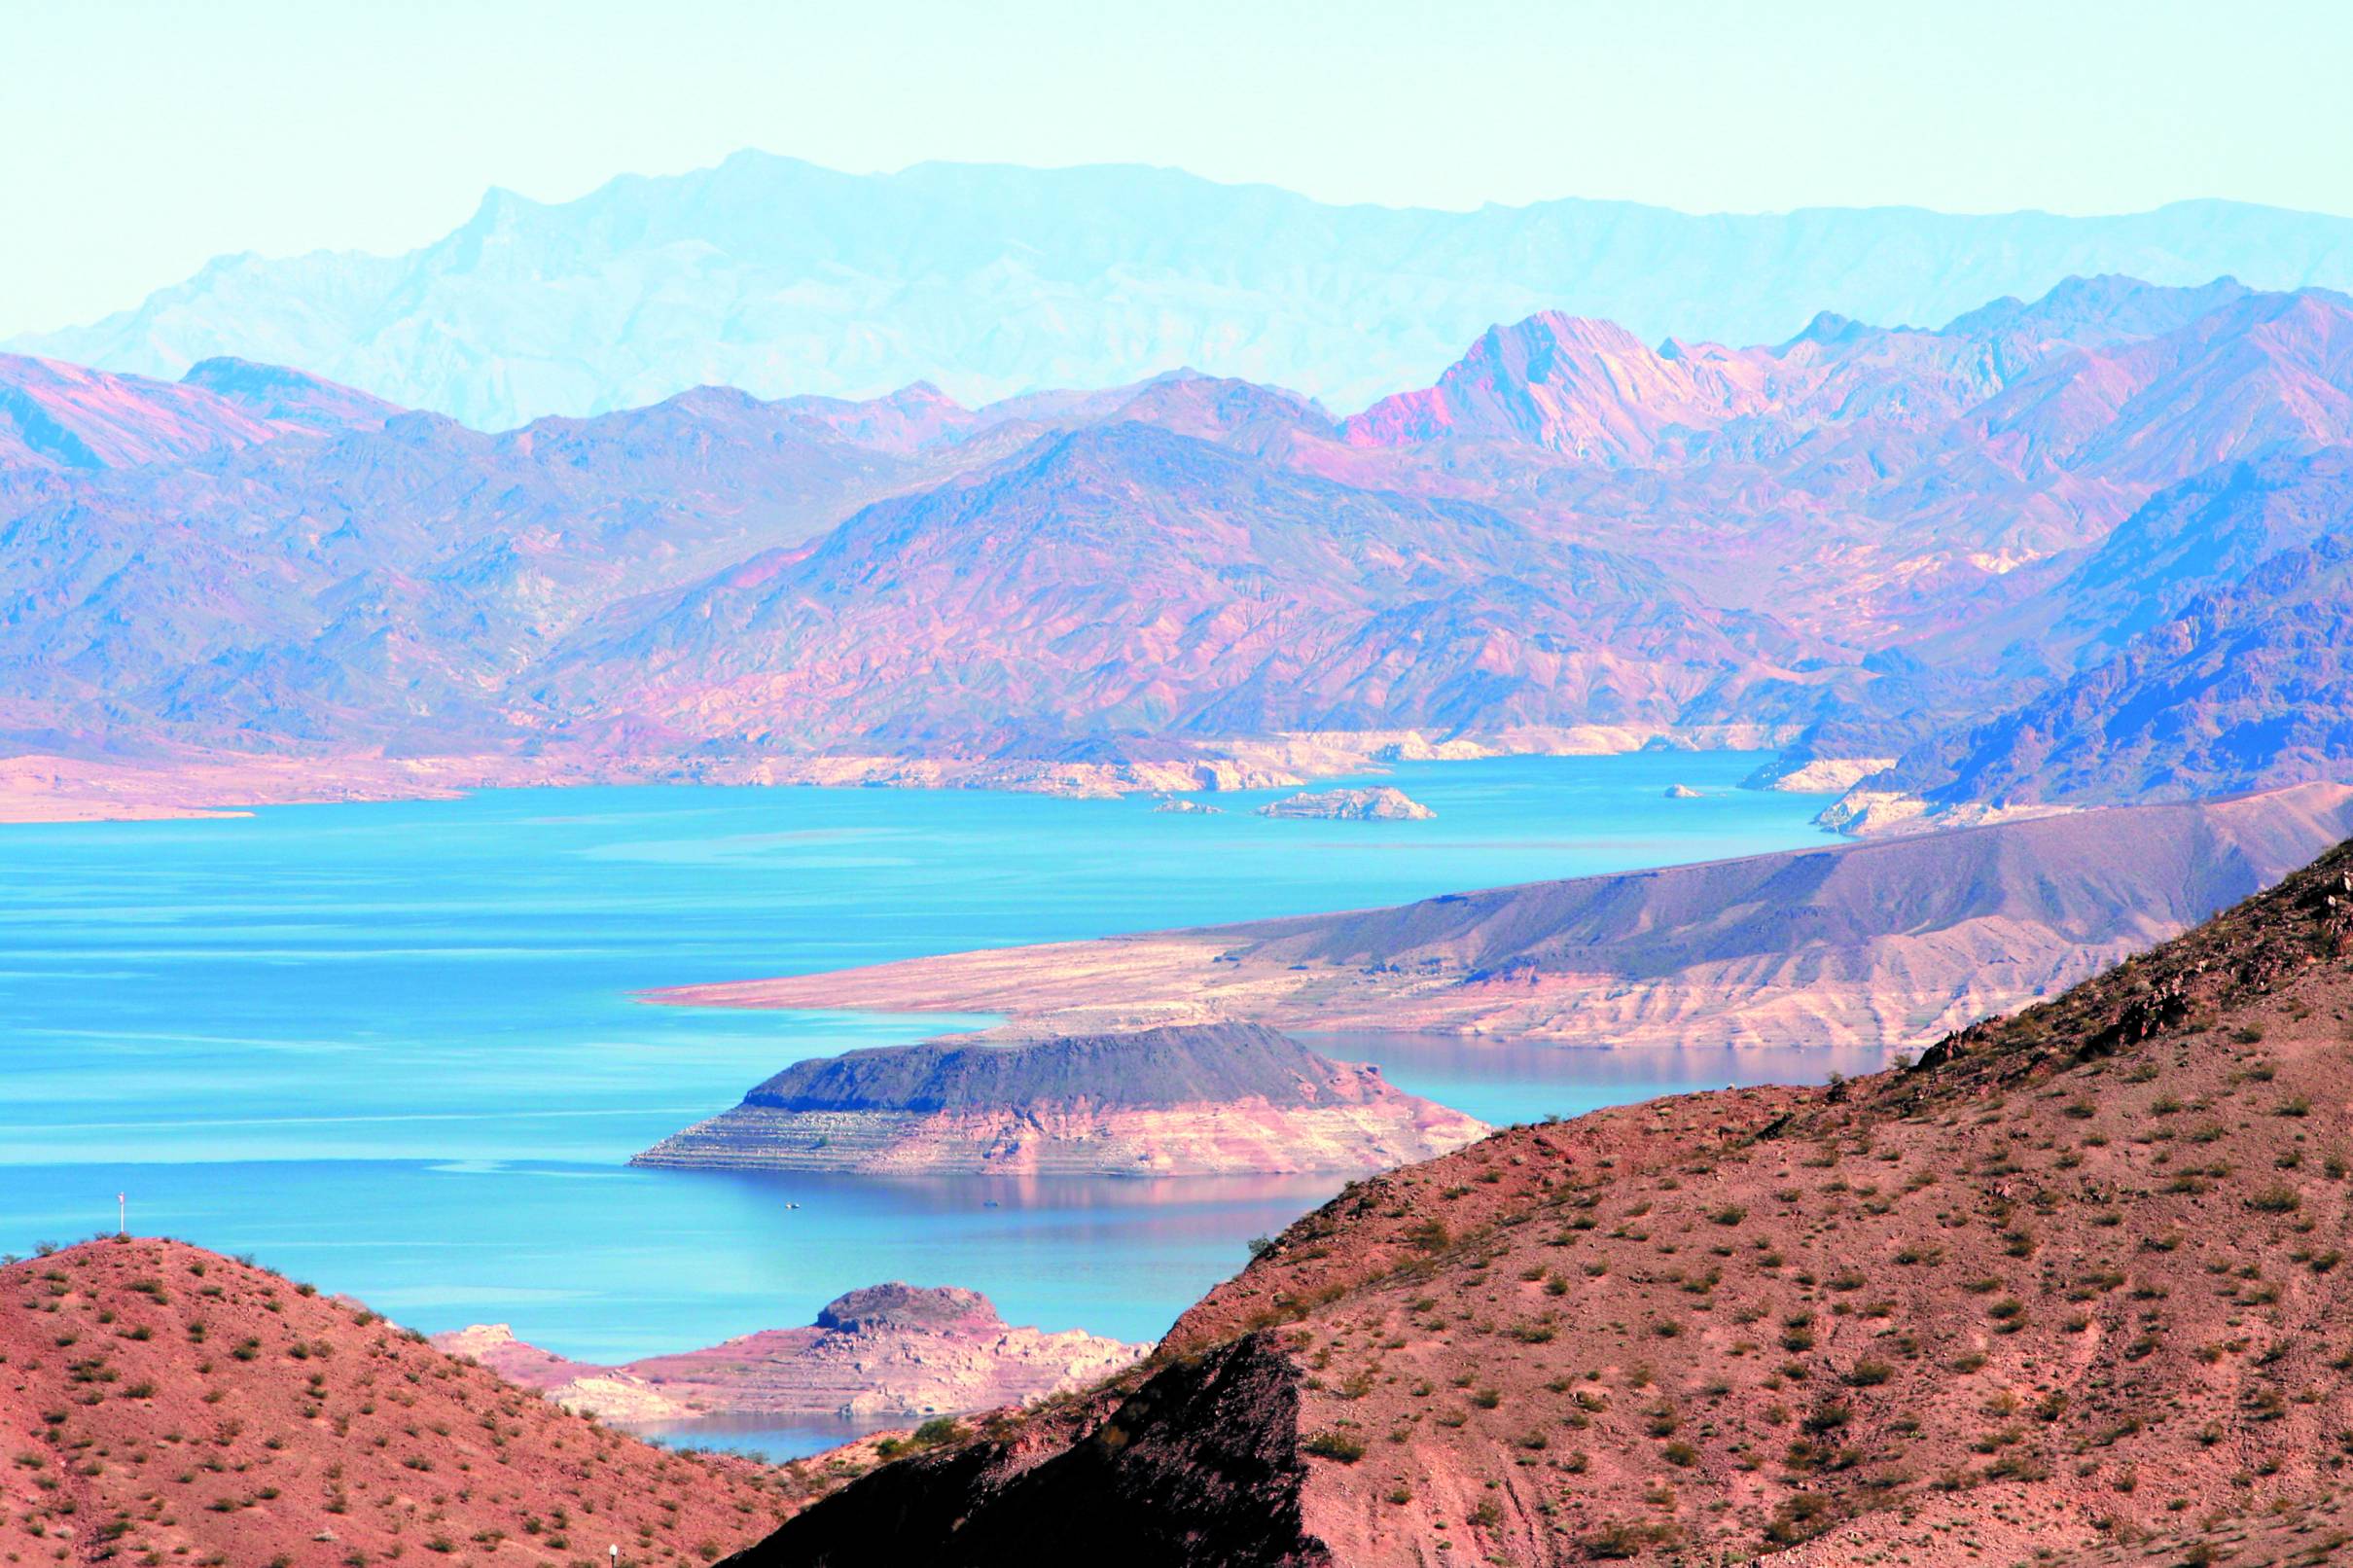 Le lac Mead fait 177 km de long et alimente Las Vegas en eau.